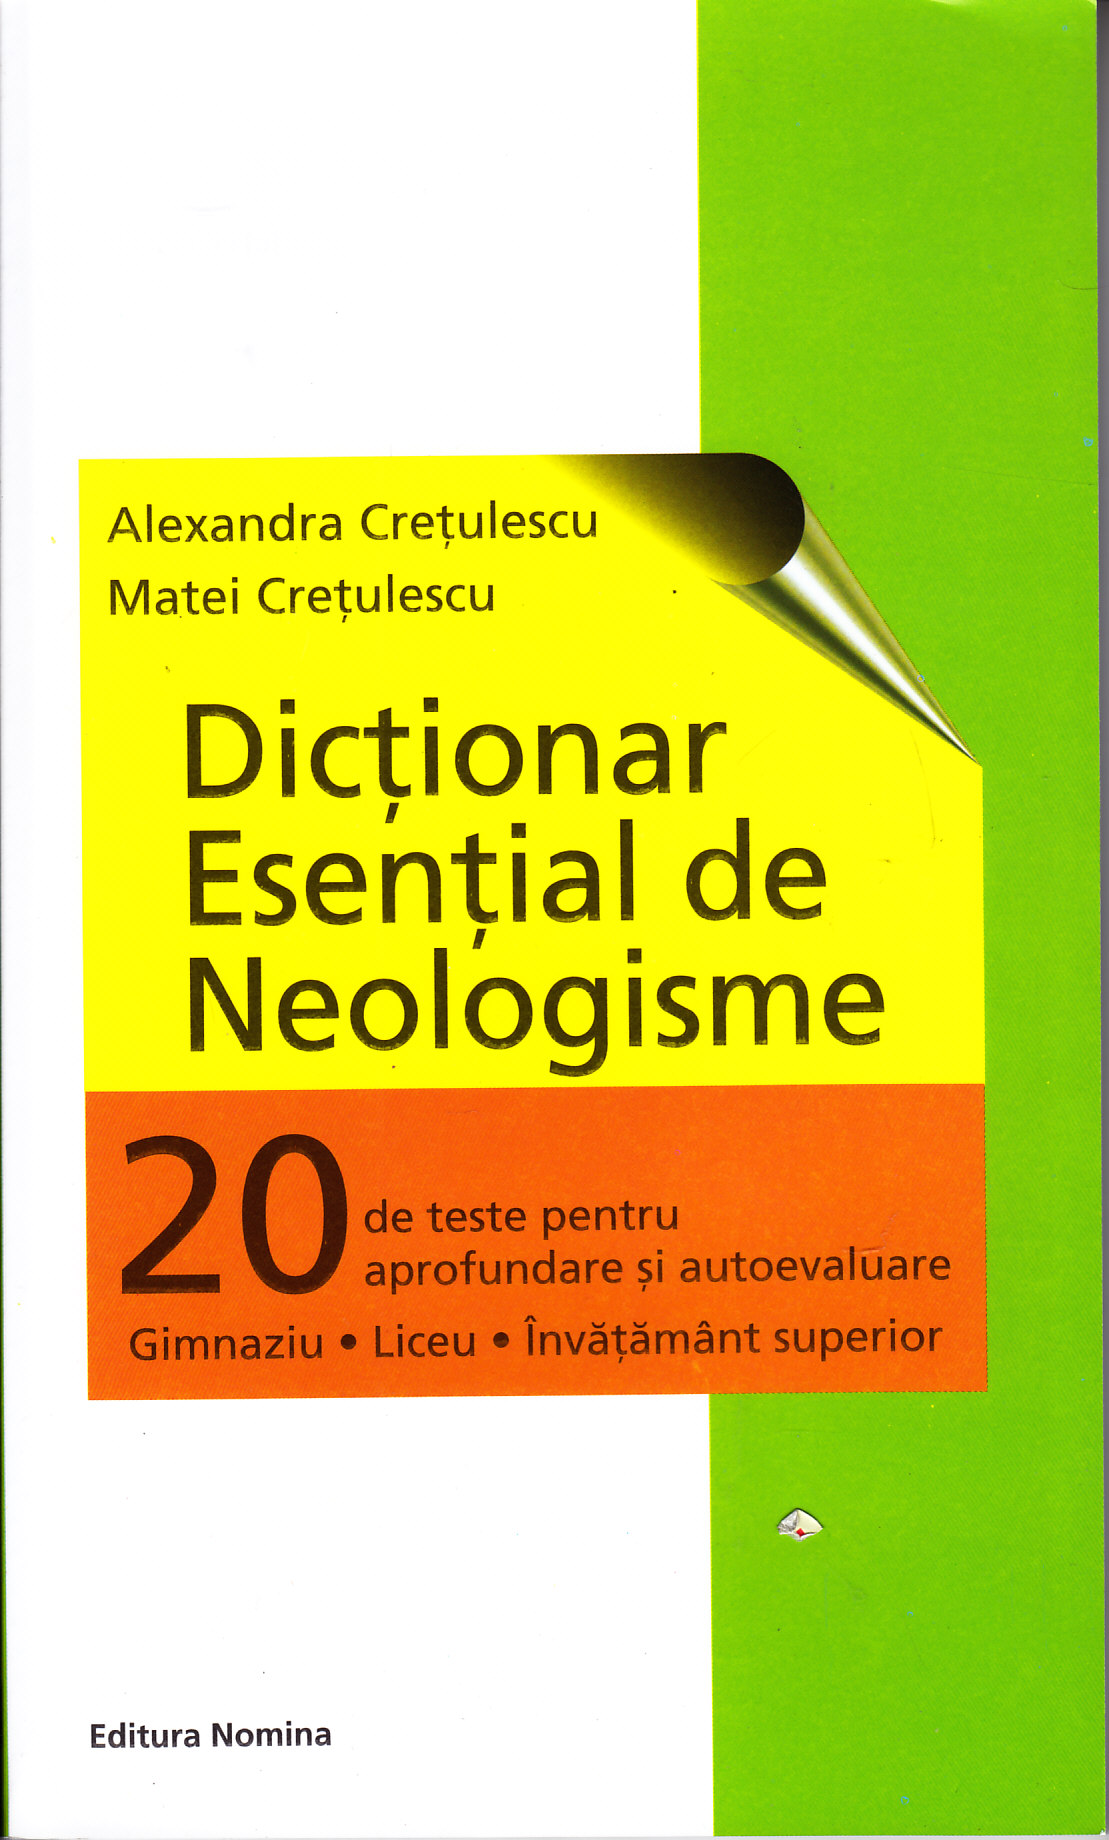 Dictionar esential de neologisme - Alexandra Cretulescu, Matei Cretulescu